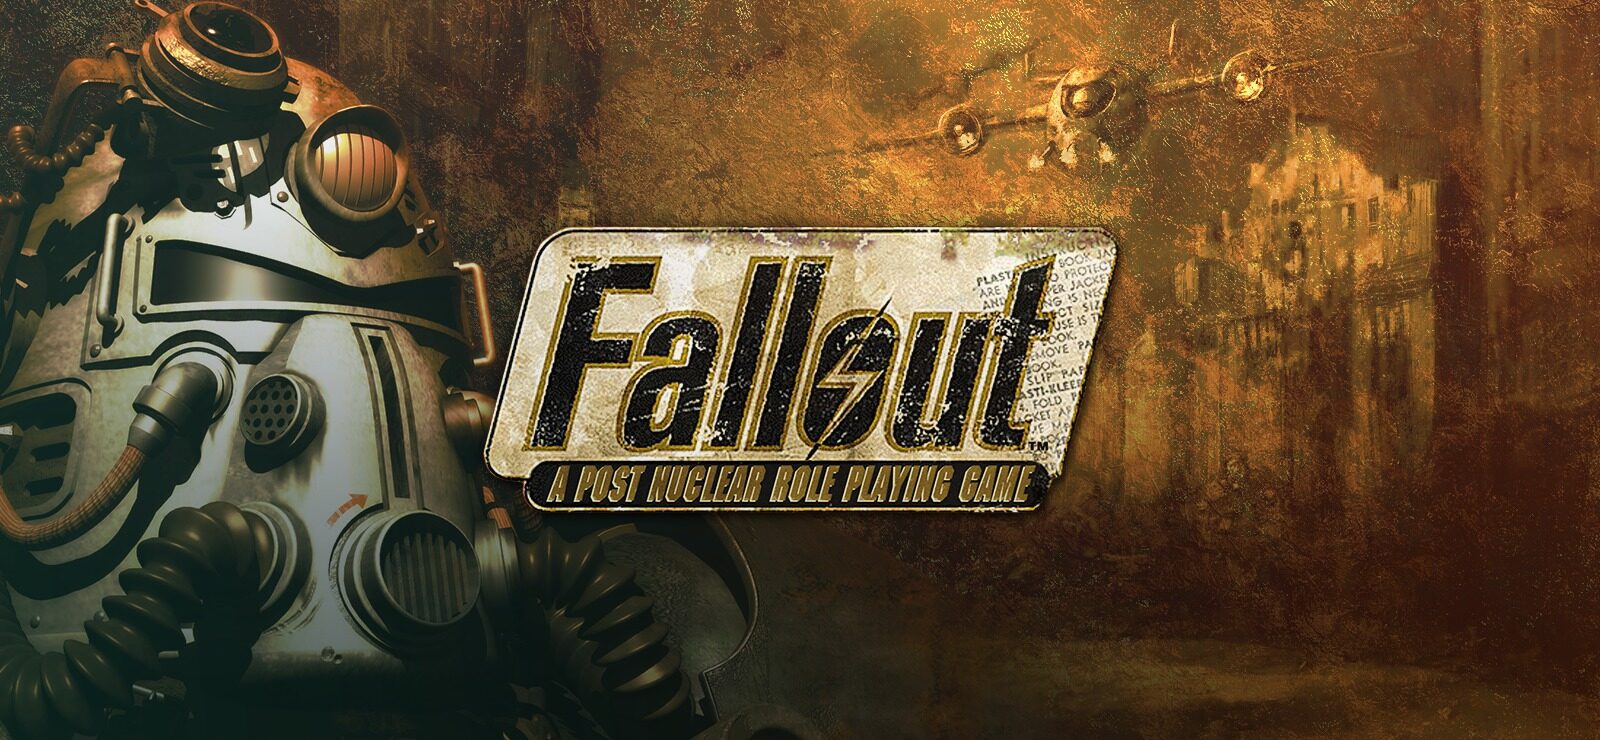 Fallout New Vegas - ПОЛНОЕ ПРОХОЖДЕНИЕ и СЕКРЕТЫ 80 СЕРИЯ приятного просмотра)))